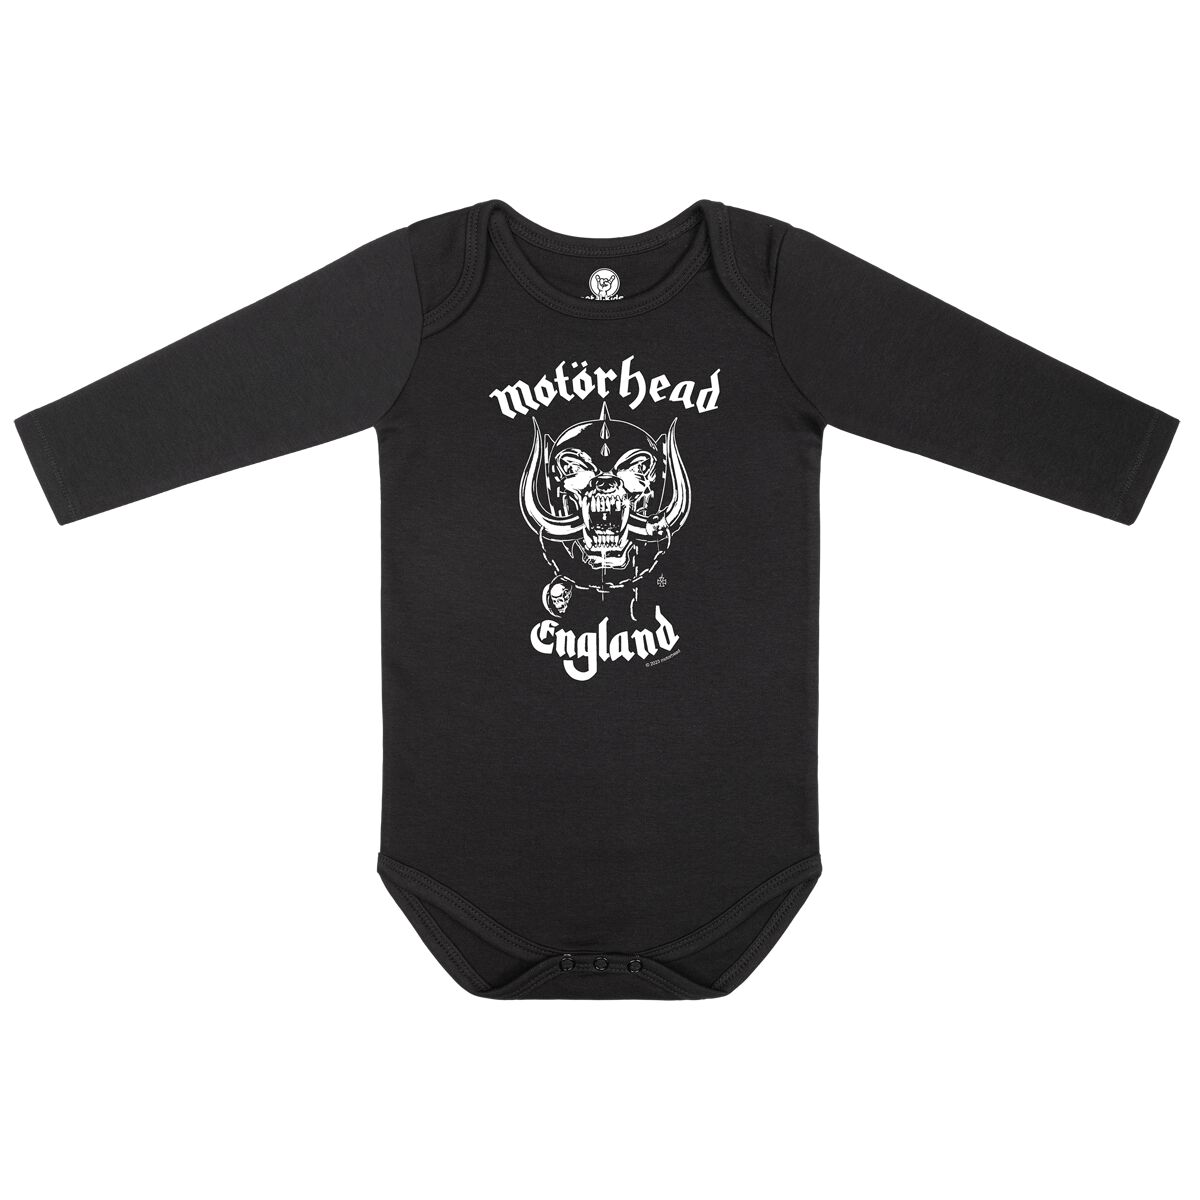 Motörhead Body für Babys - England Stencil - für Mädchen & Jungen - schwarz  - Lizenziertes Merchandise!